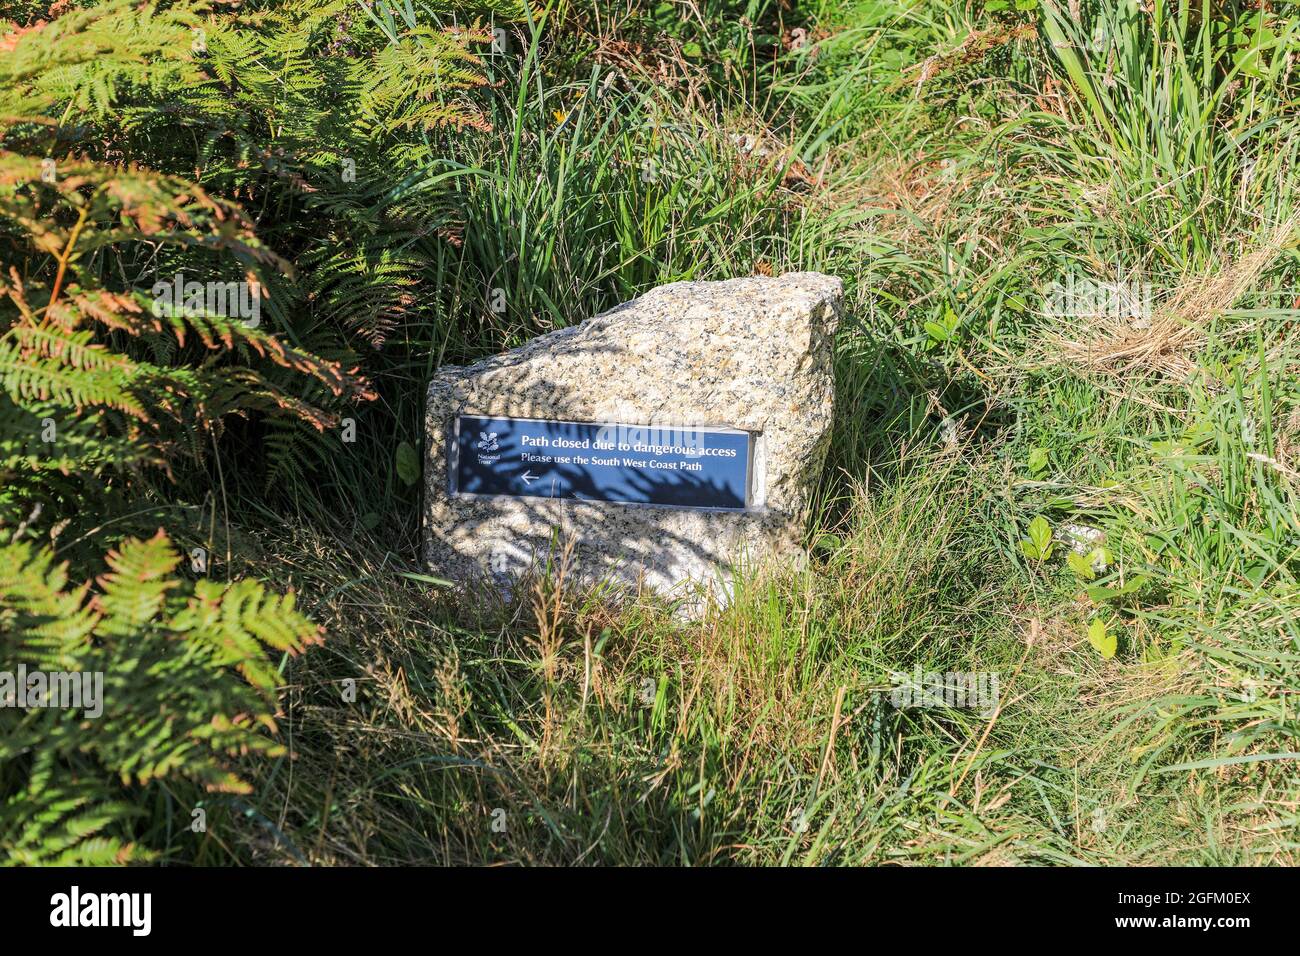 Un panneau érigé par le National Trust disant "chemin fermé, utiliser le South West Coast path", Cornwall, Angleterre, Royaume-Uni. Photo prise à partir de la piste de marche publique Banque D'Images